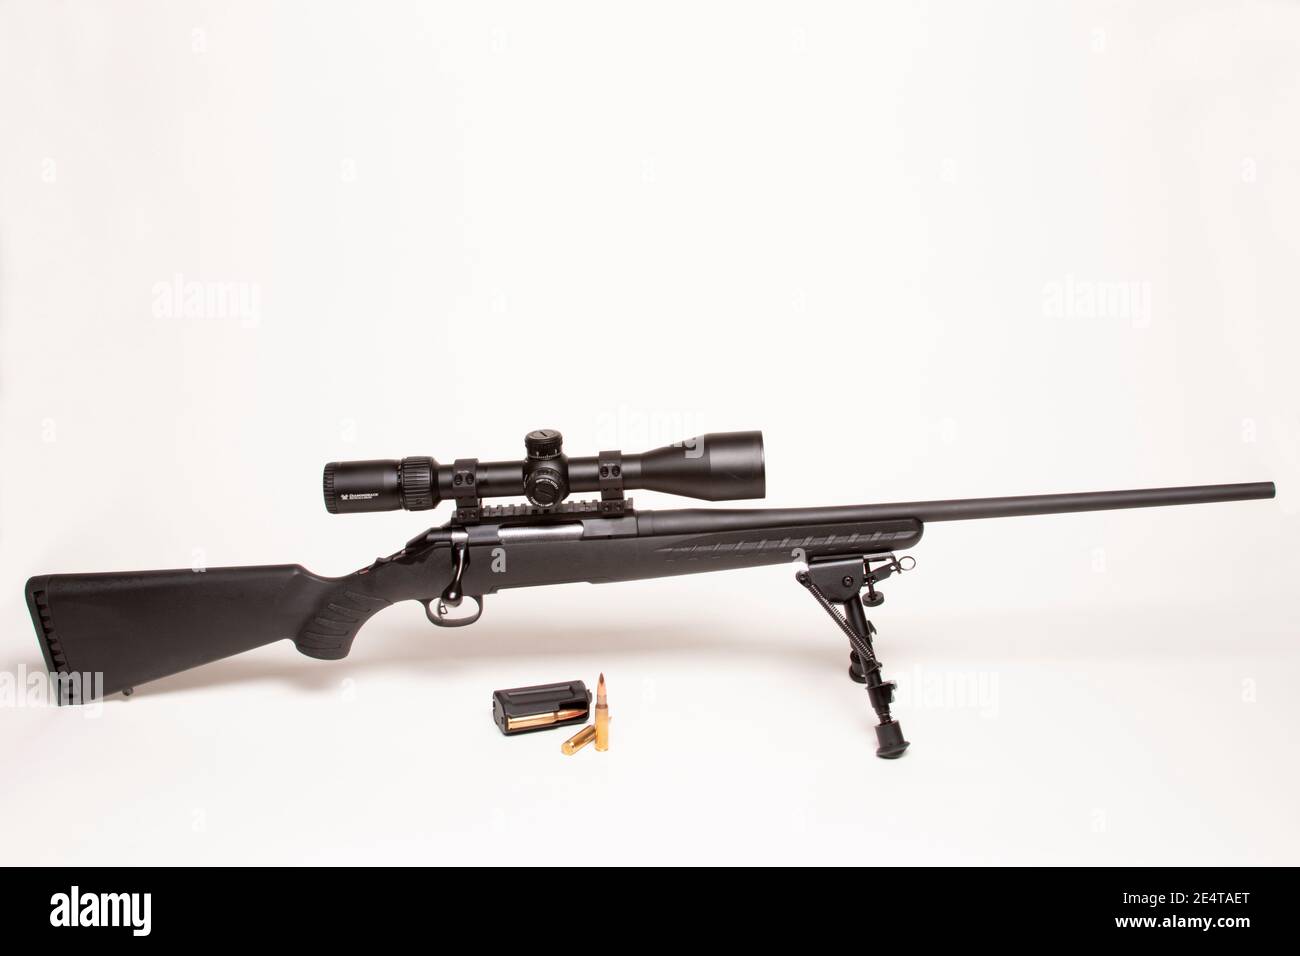 Ruger American Rifle mit Vortex Scope Stockfoto